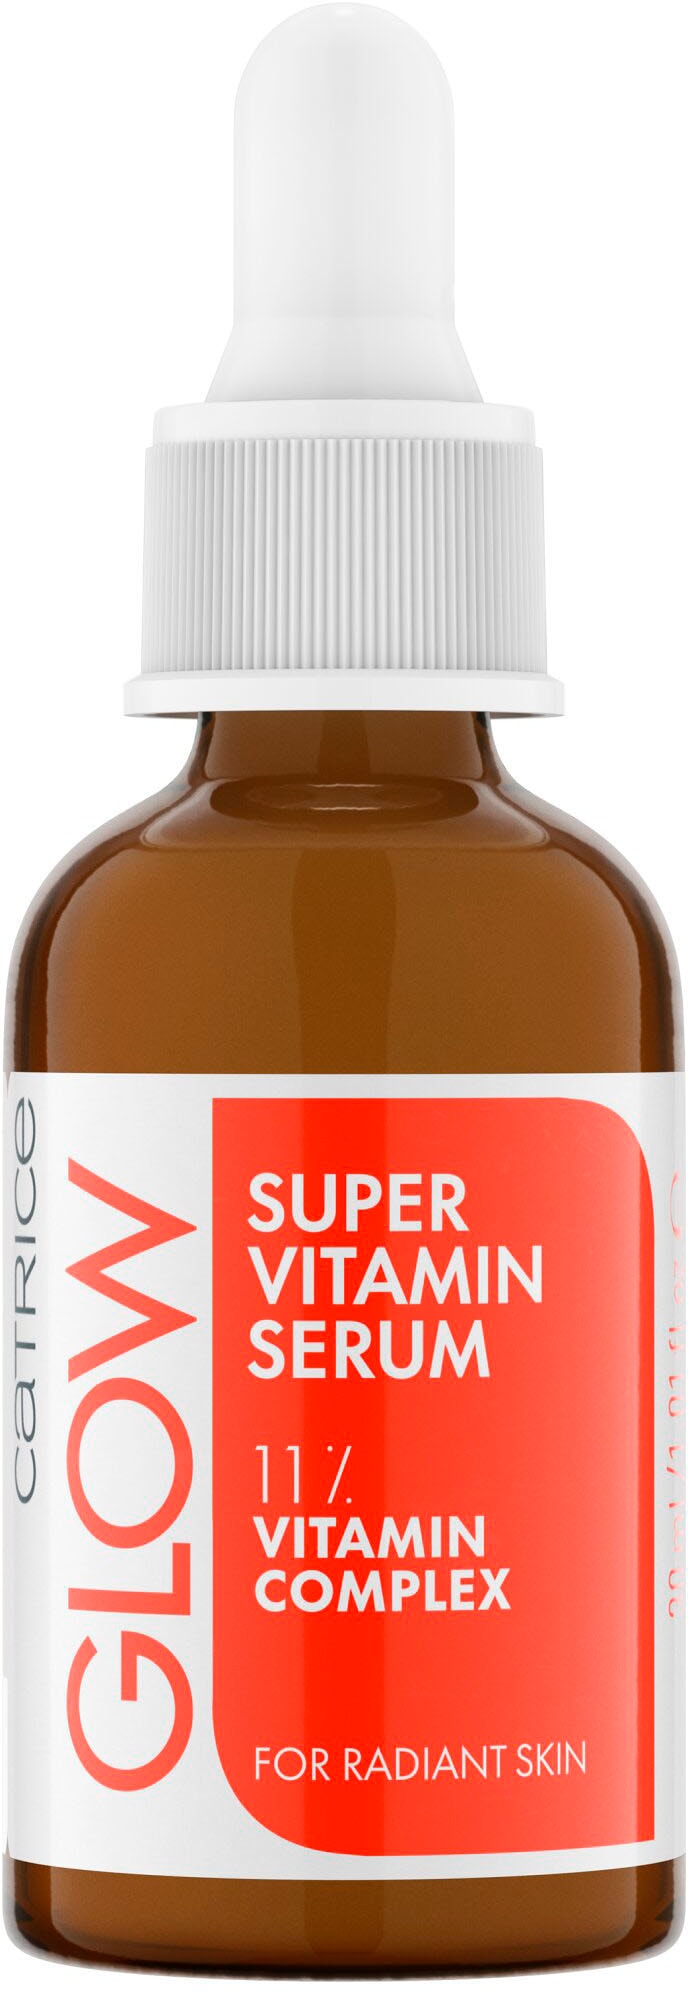 Catrice Gesichtsserum »Glow Super Vitamin OTTO bei Serum« online